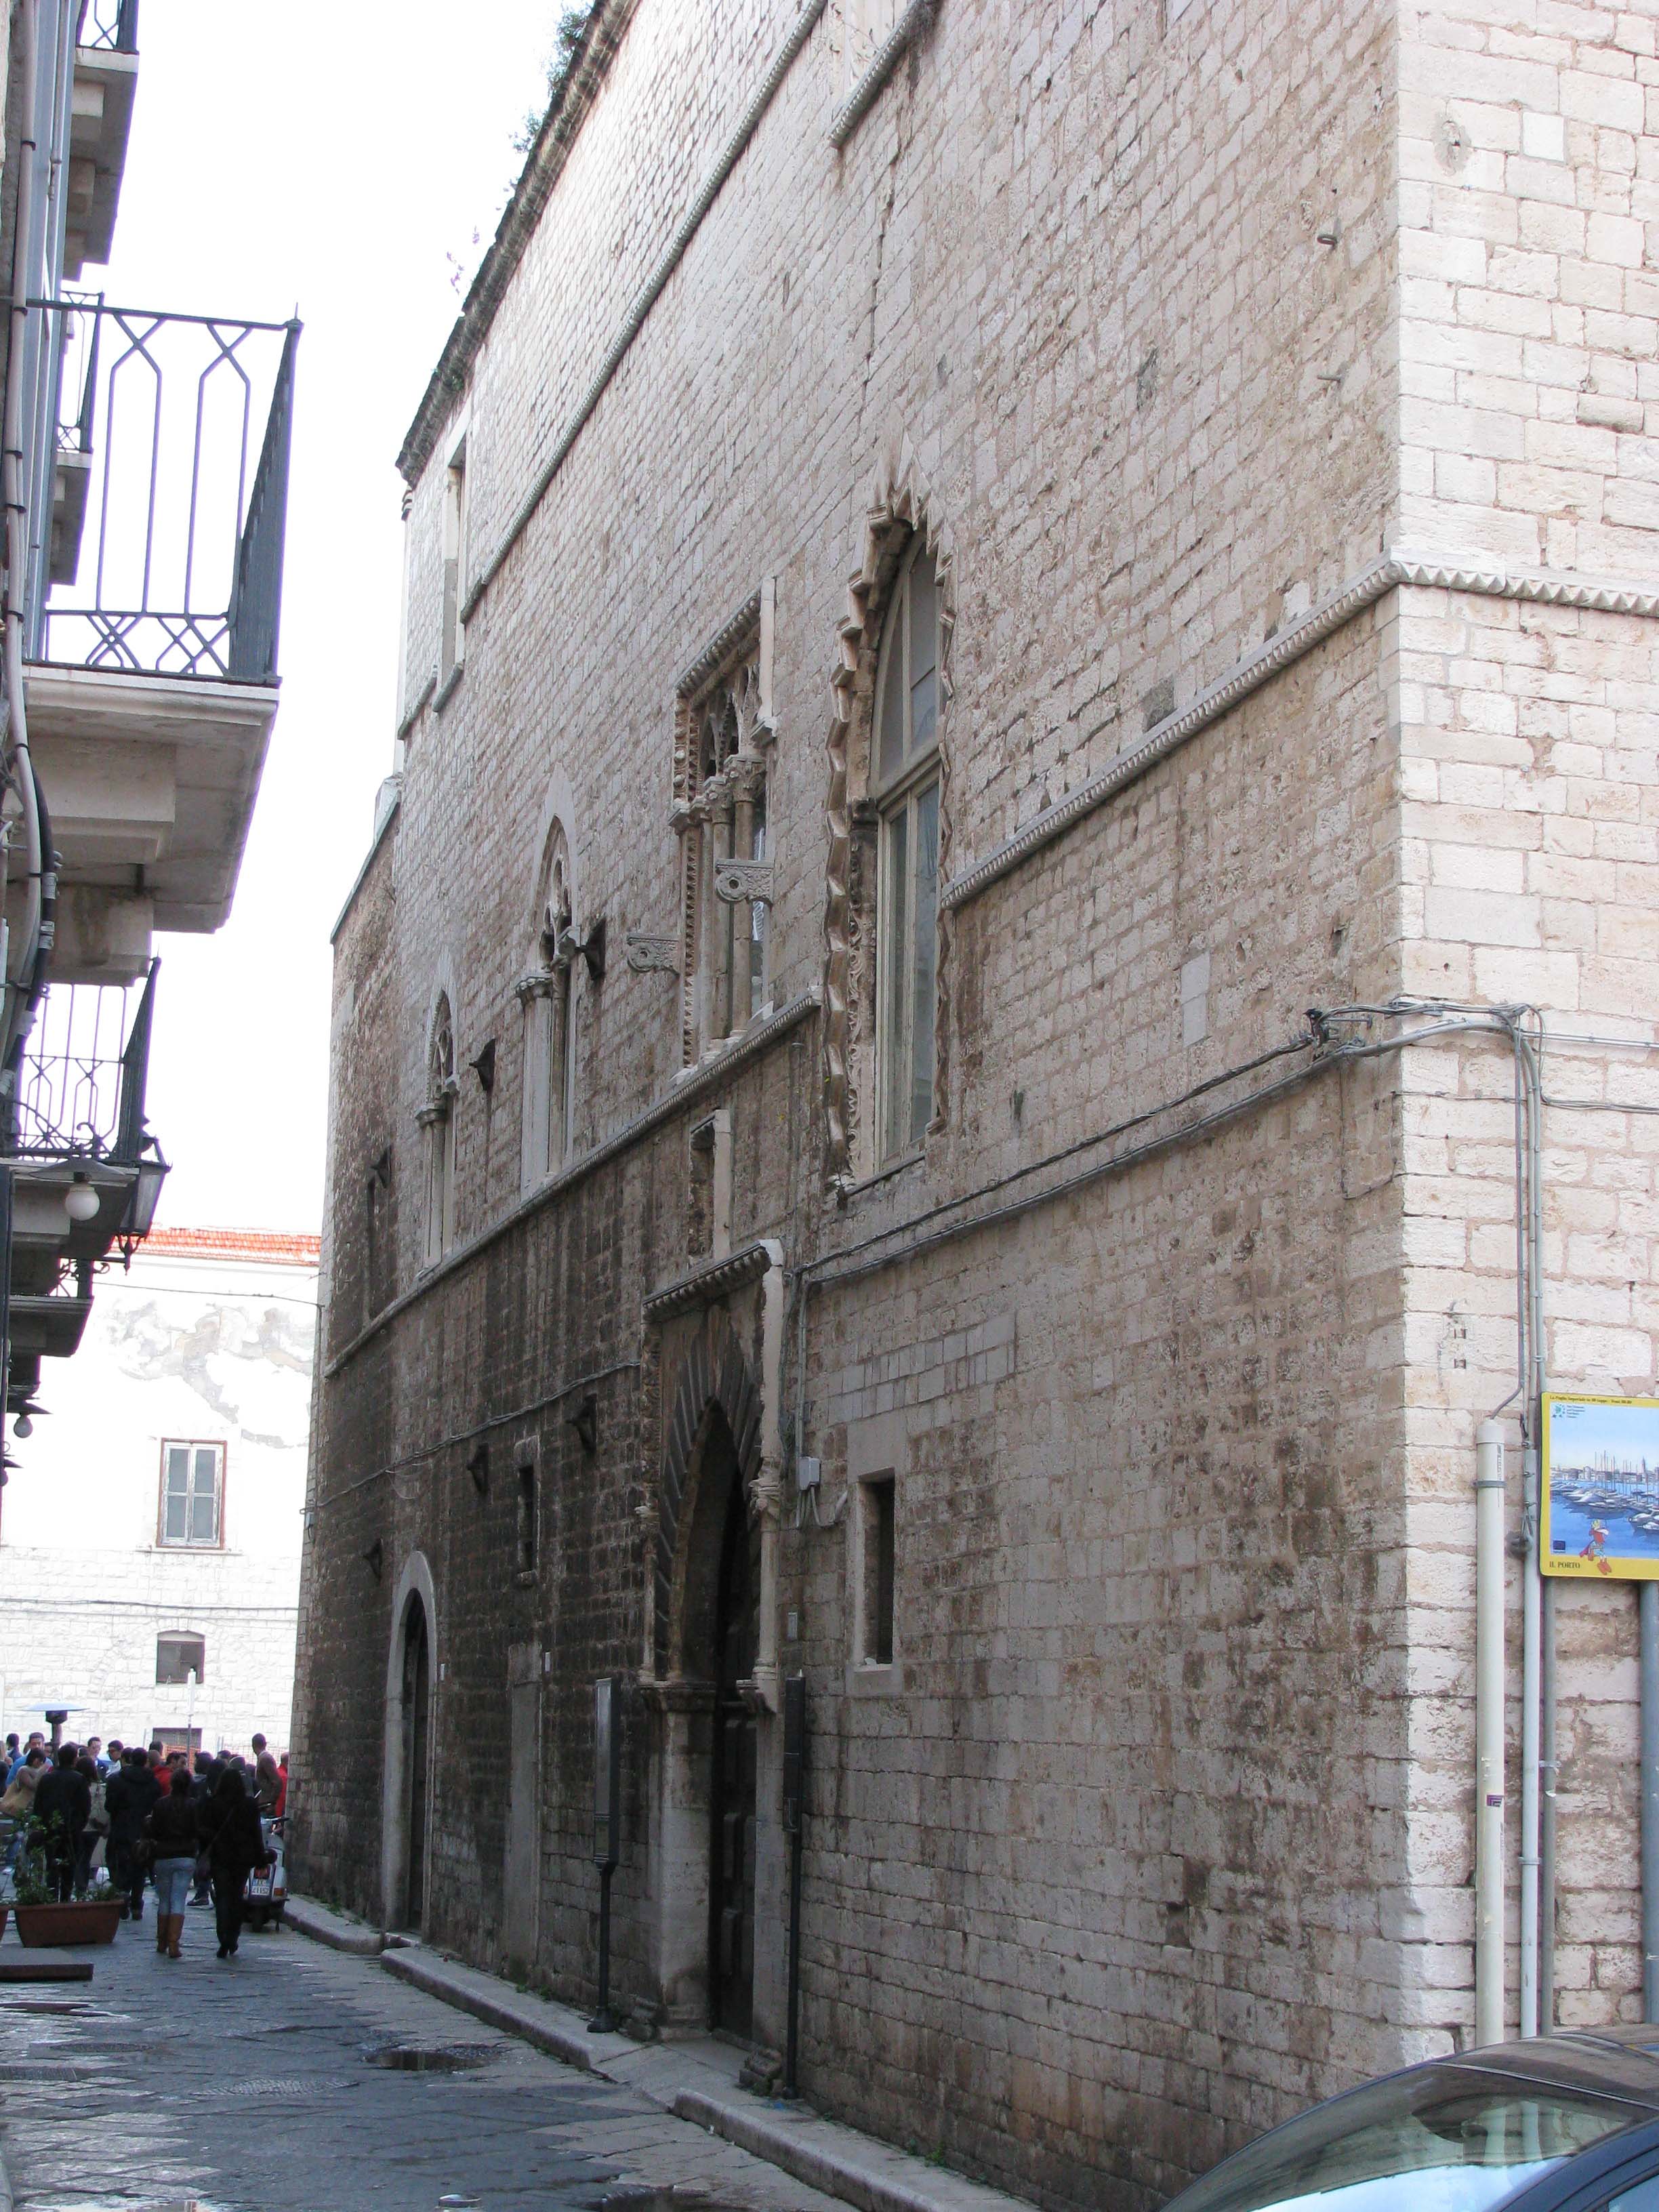 Savinogiusto, Facciata anteriore di Palazzo Caccetta, 2009